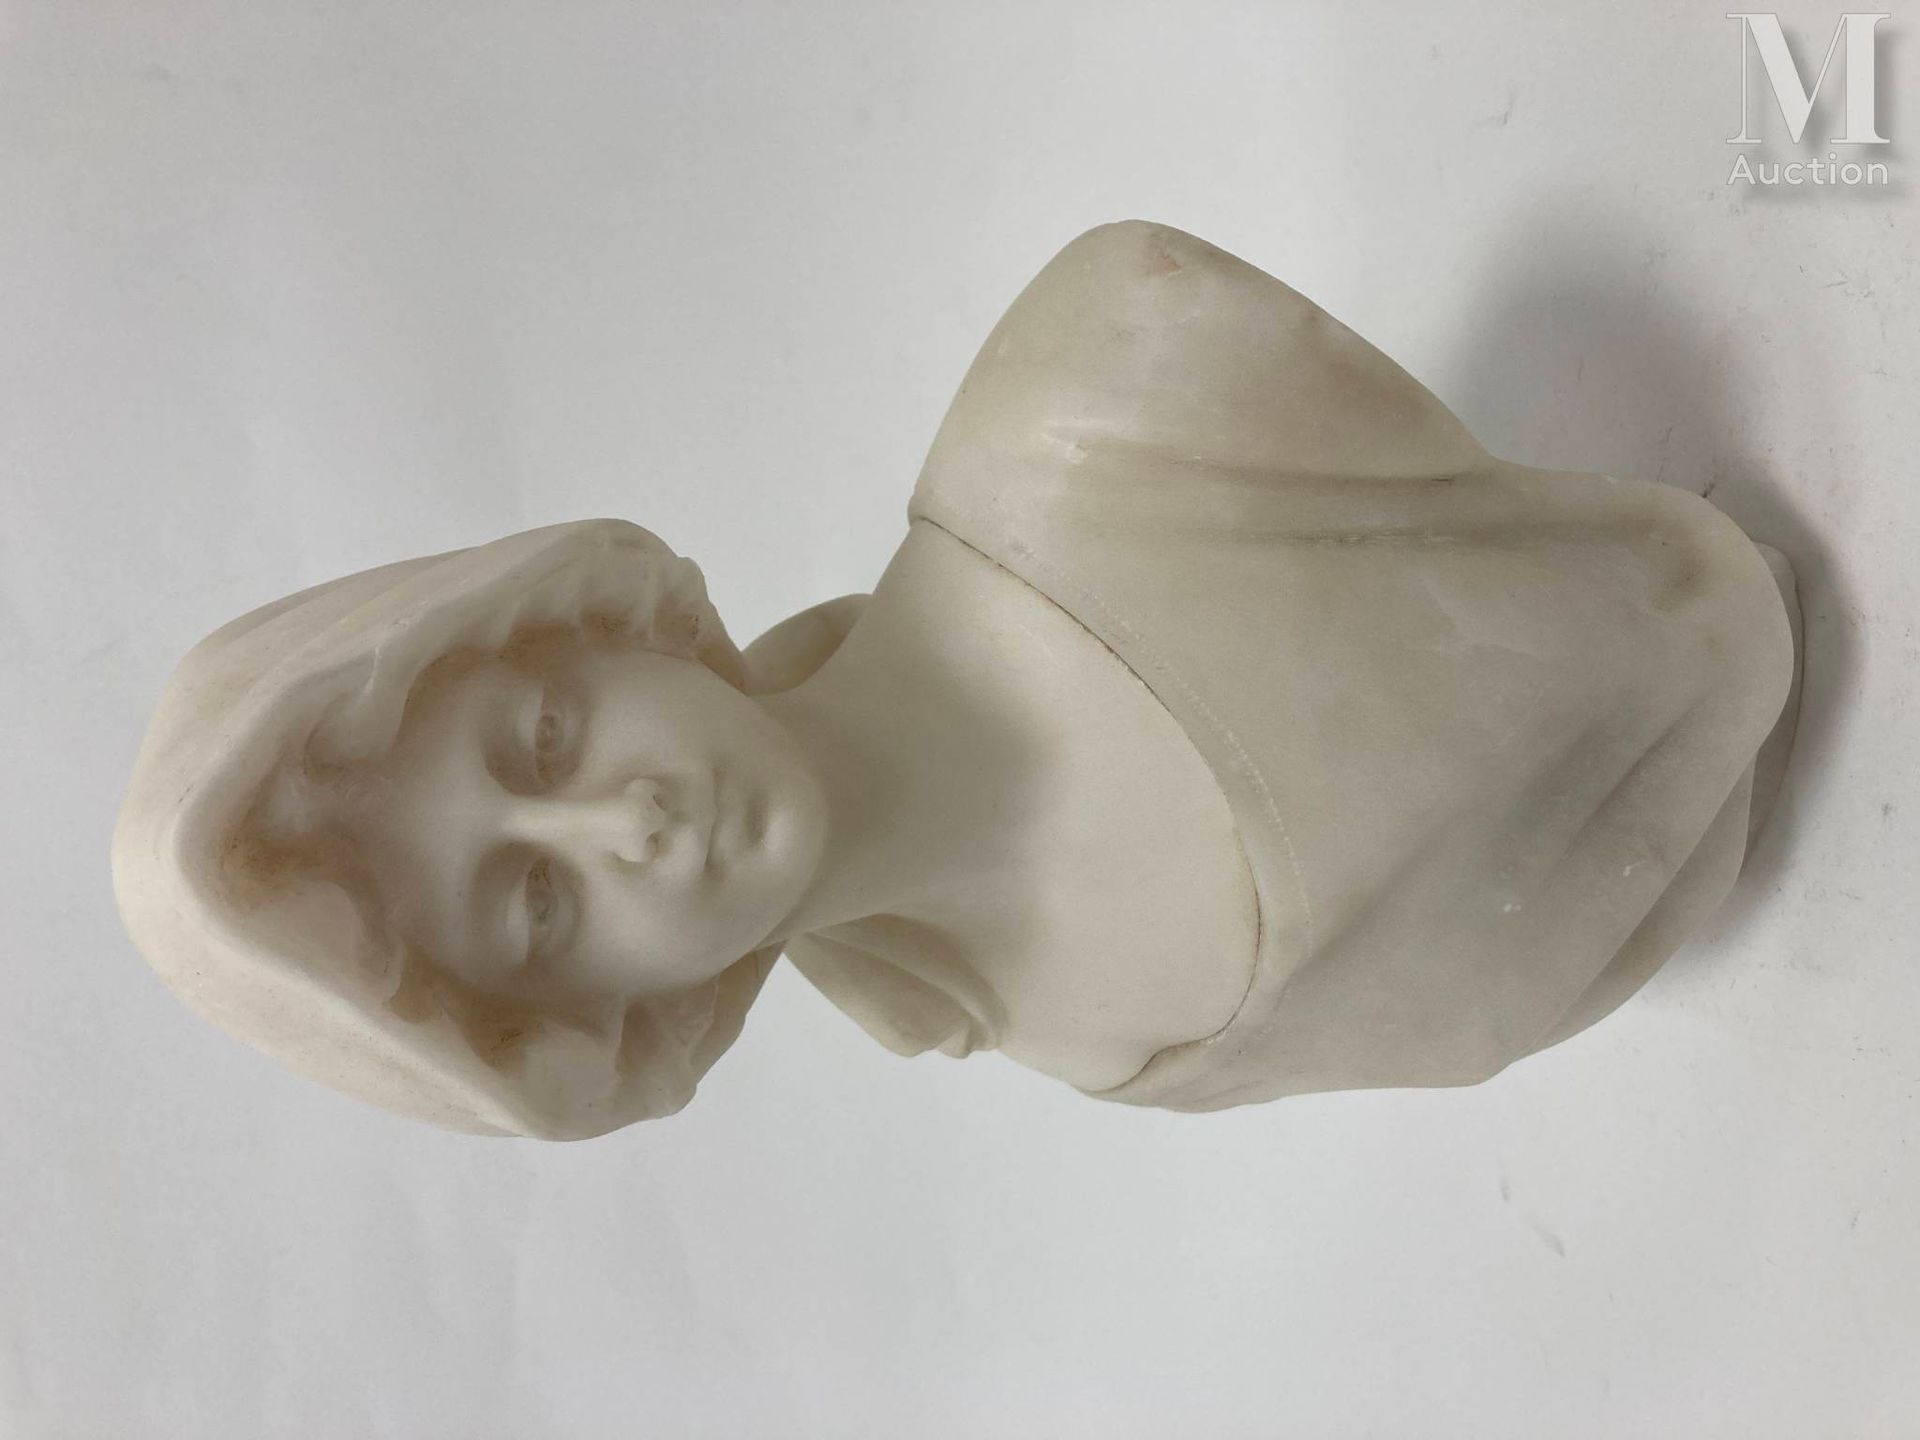 Guglielmo PUGI (1850-1915) Busto de mujer joven en alabastro.

Firmado "Pugi" en&hellip;